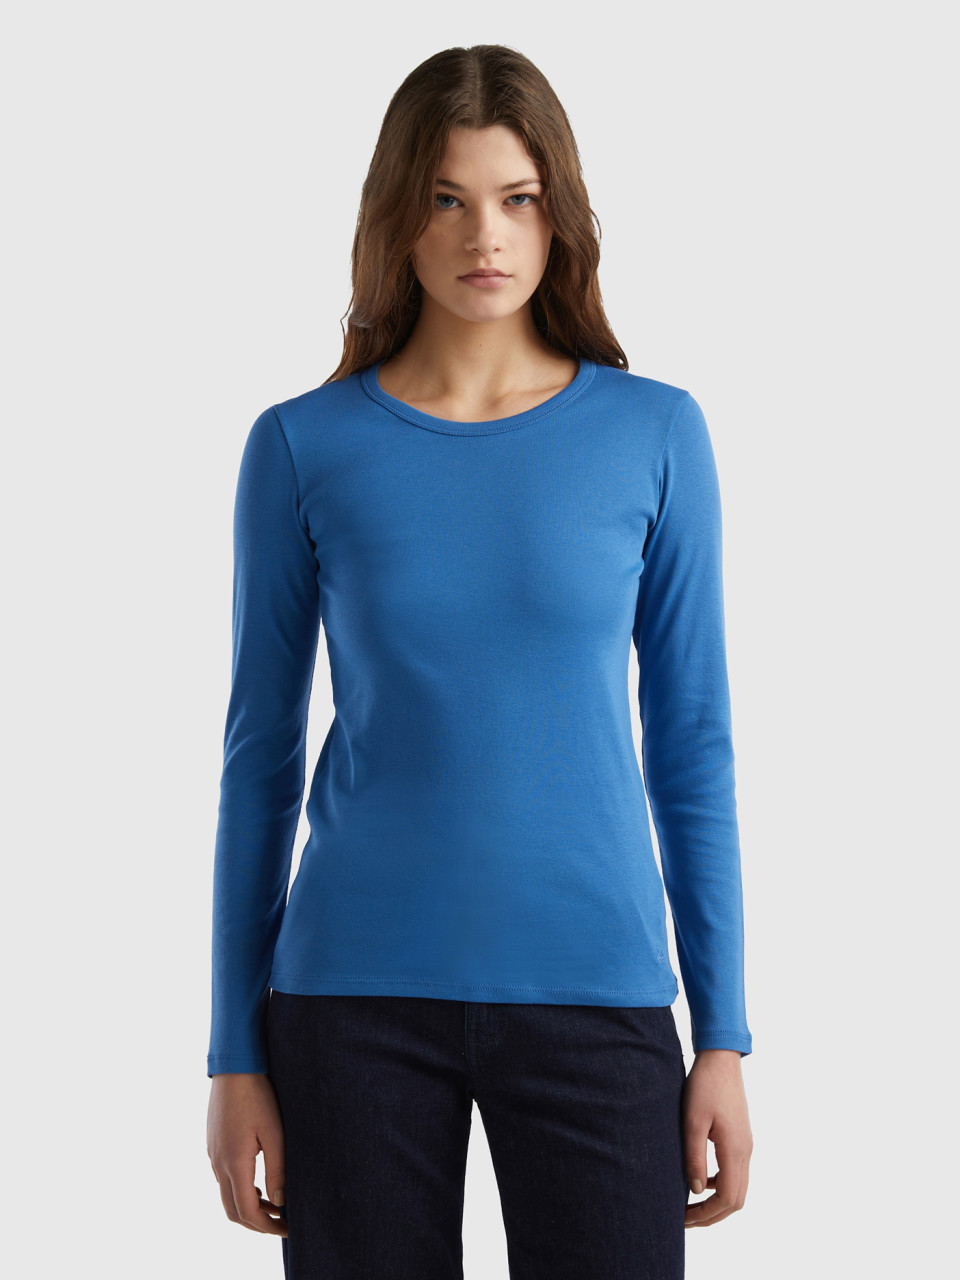 Benetton, Long Sleeve Pure Cotton T-shirt, Blue, Women